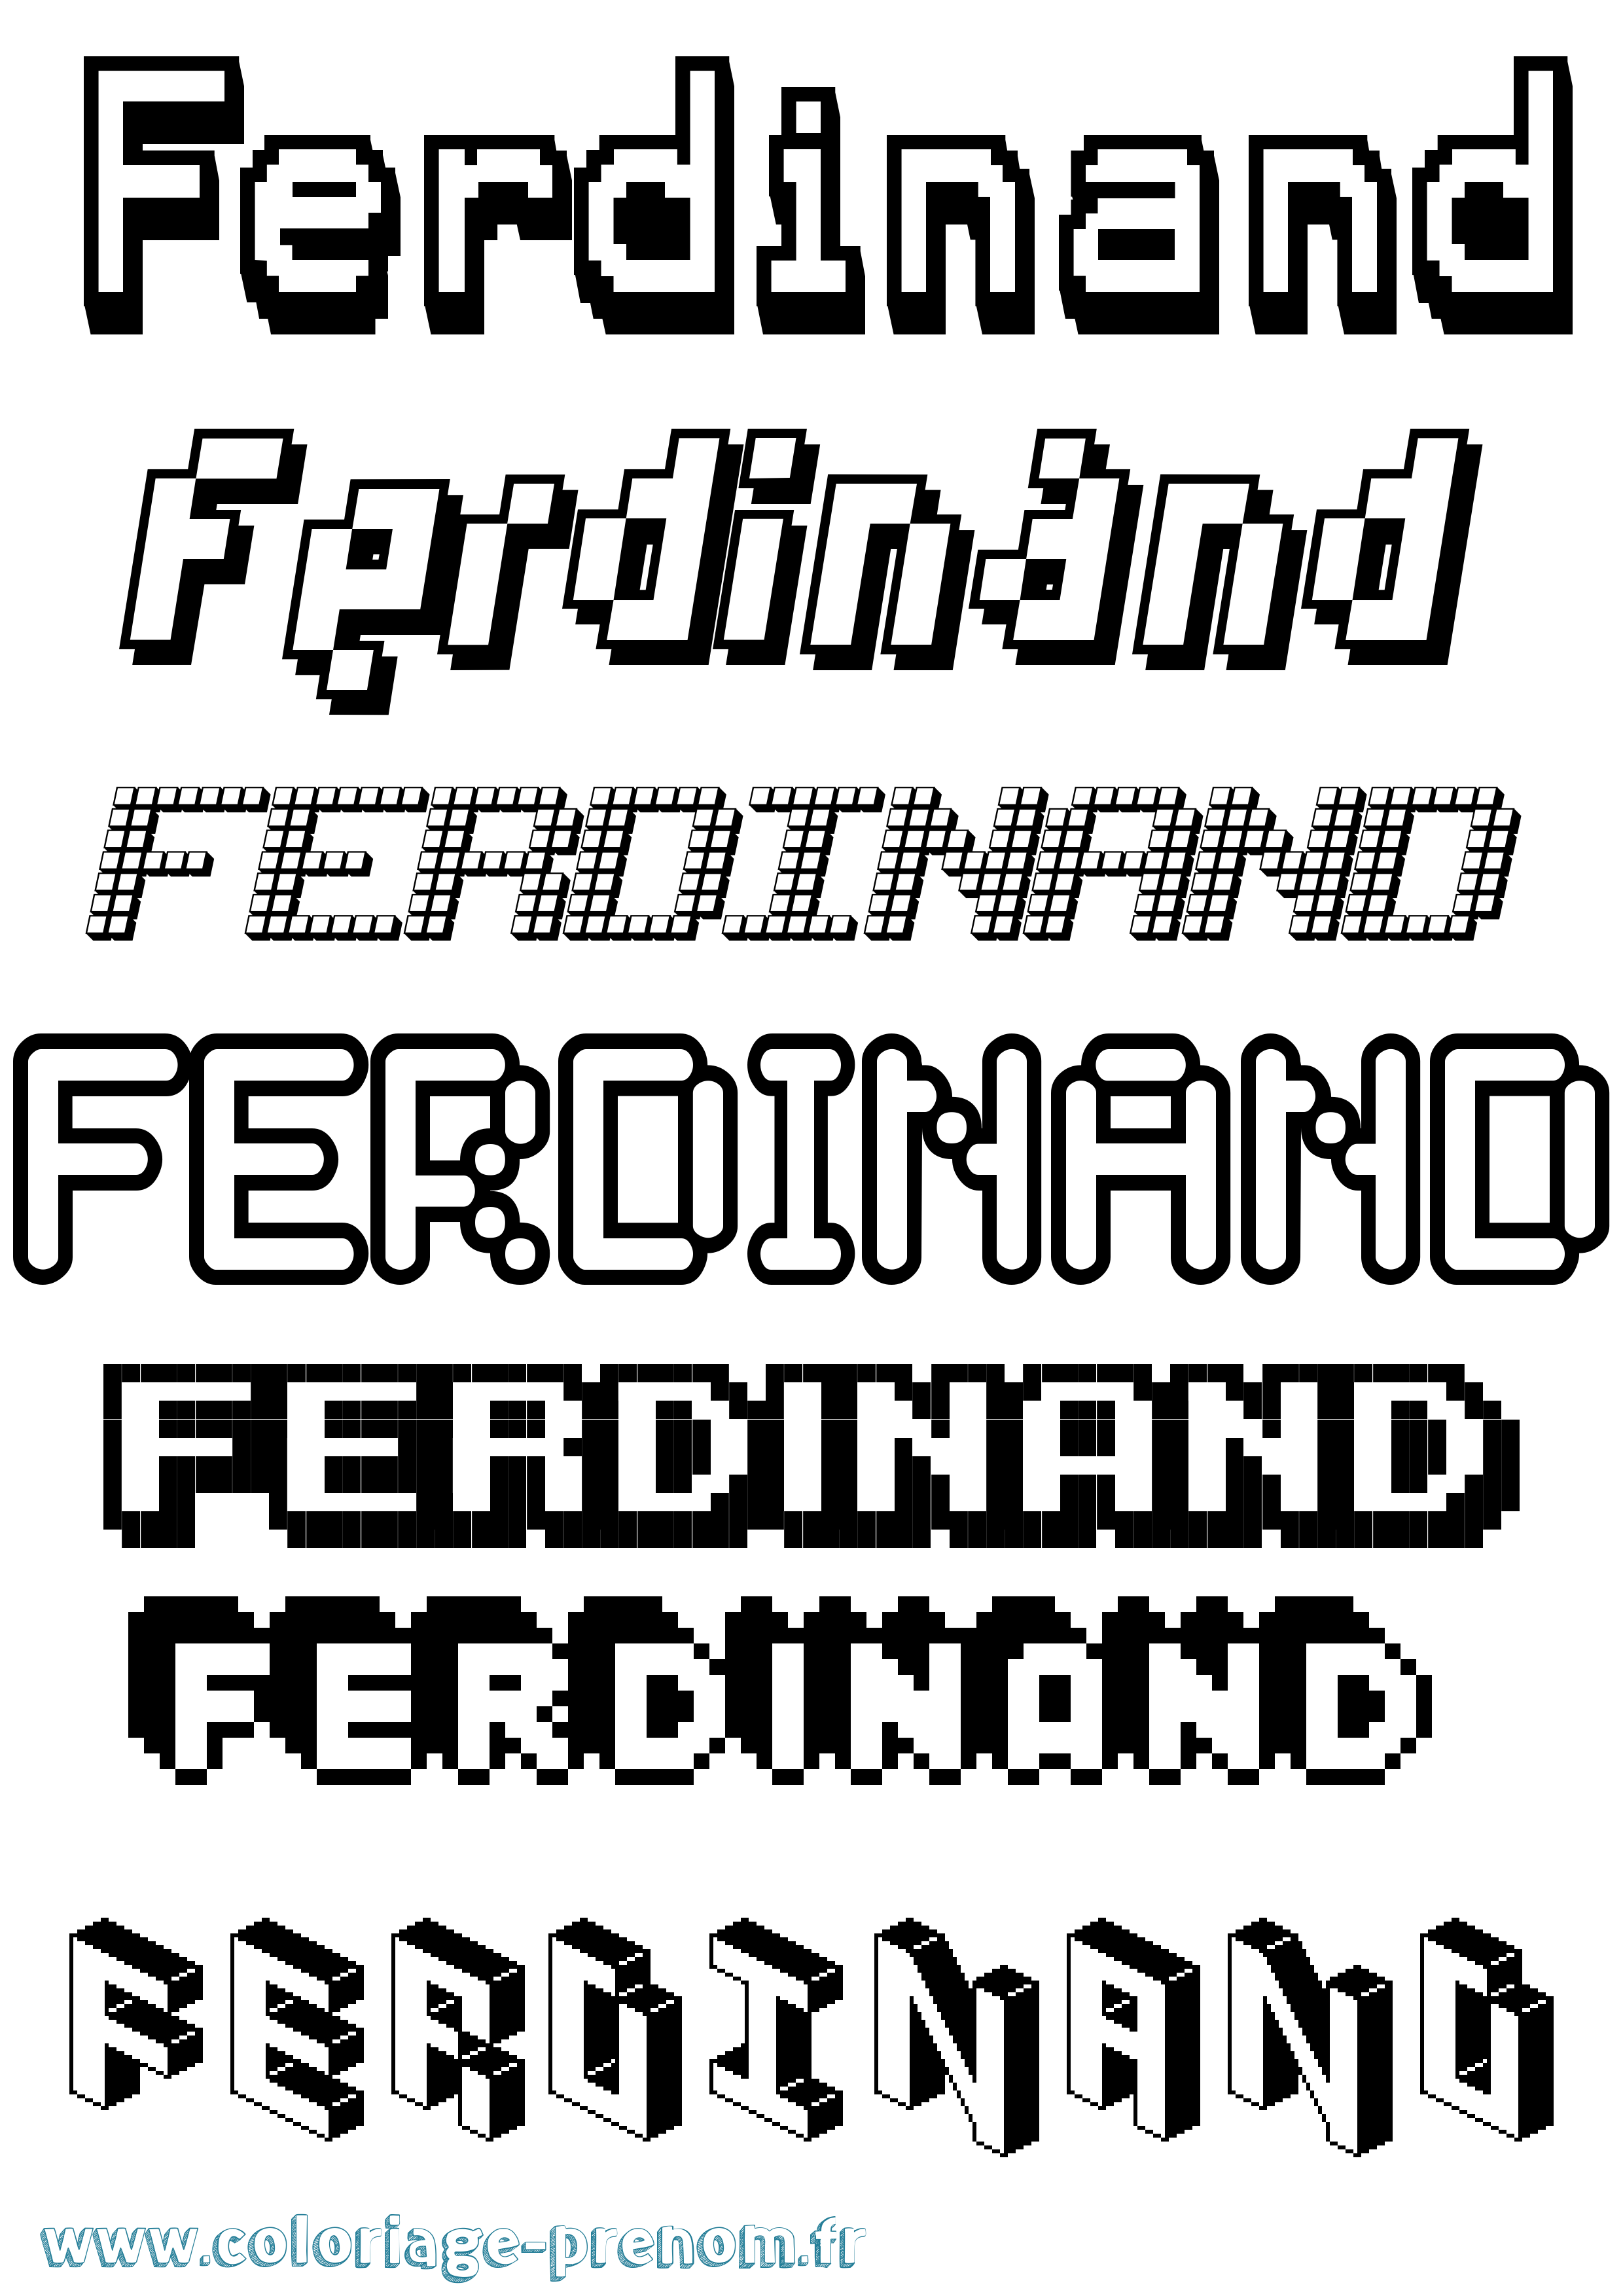 Coloriage prénom Ferdinand